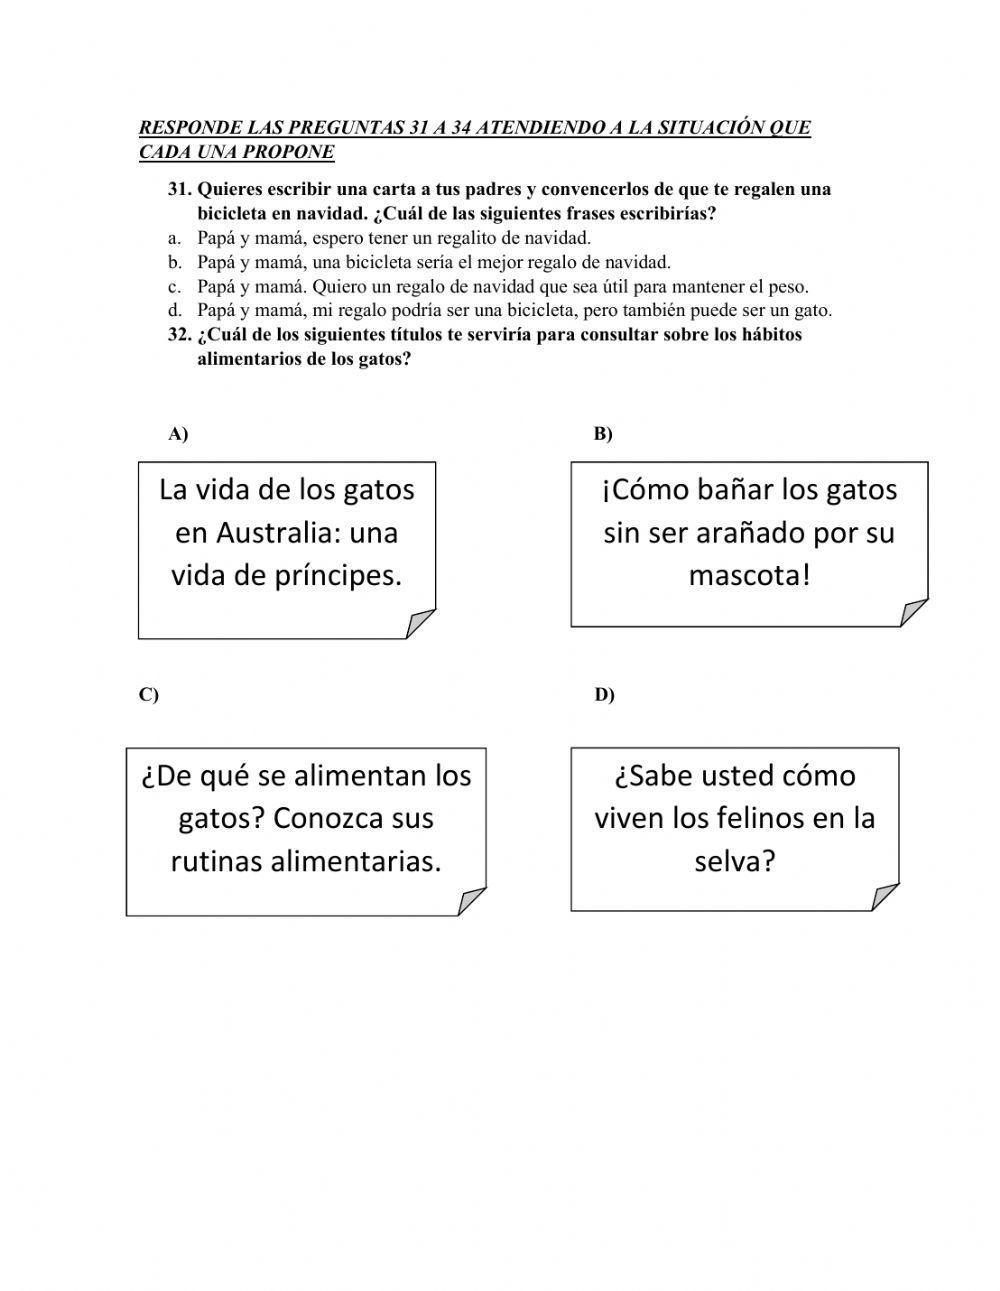 Prueba saber español parte 2